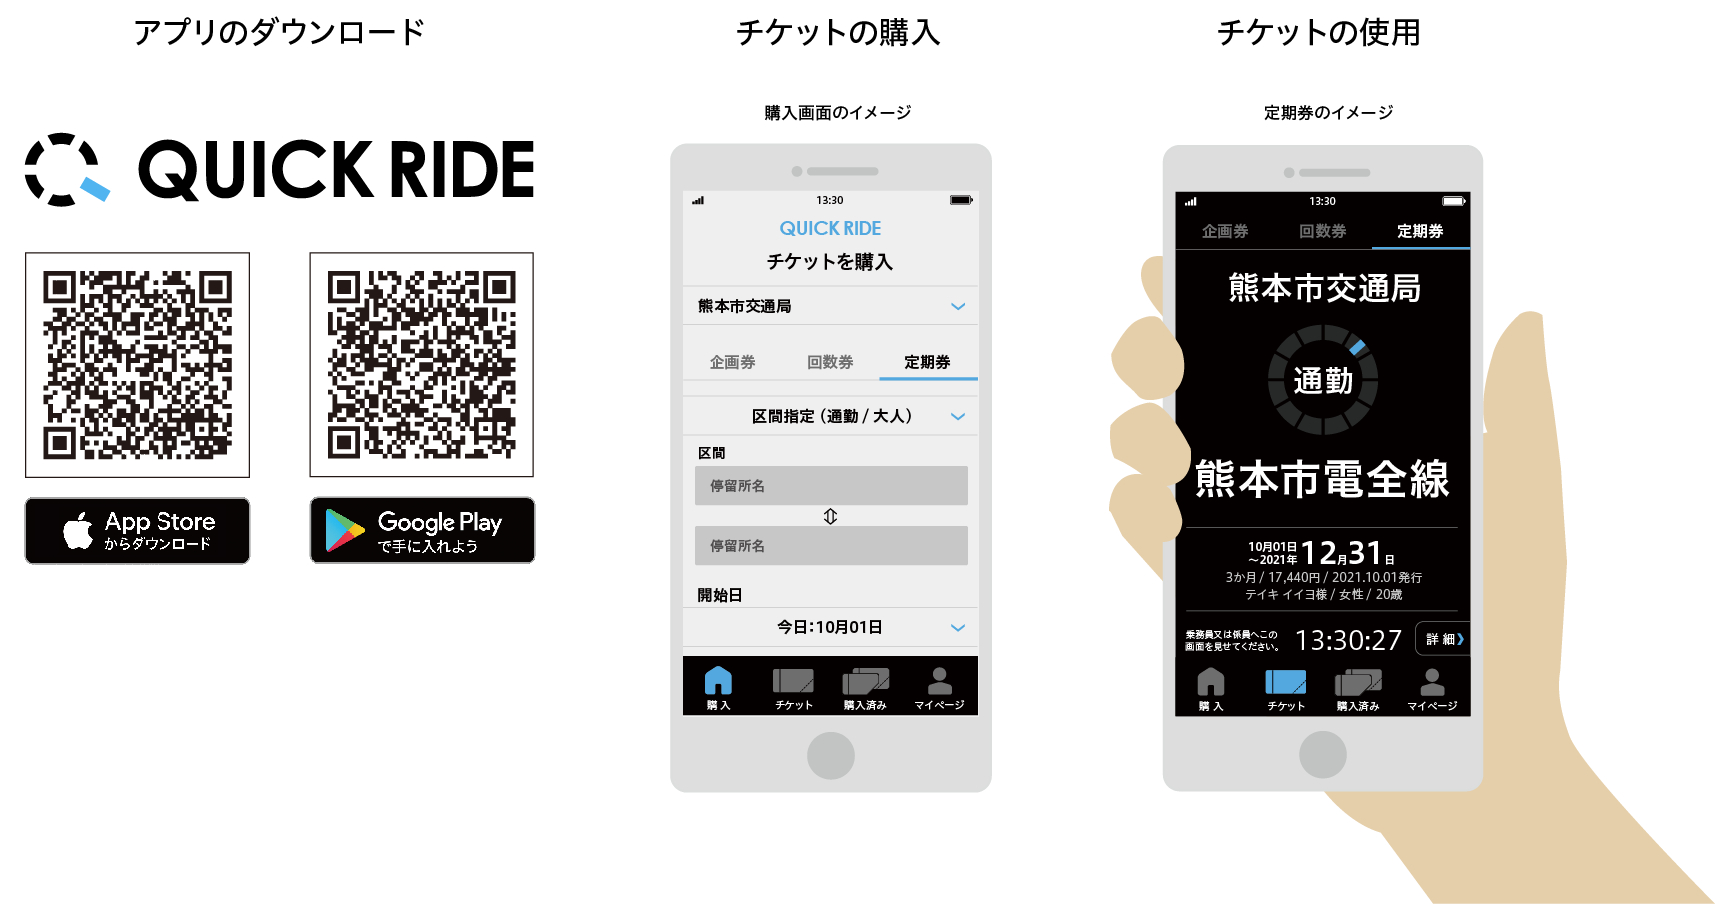 スマホ乗車券アプリ「QUICK RIDE」サービス概要